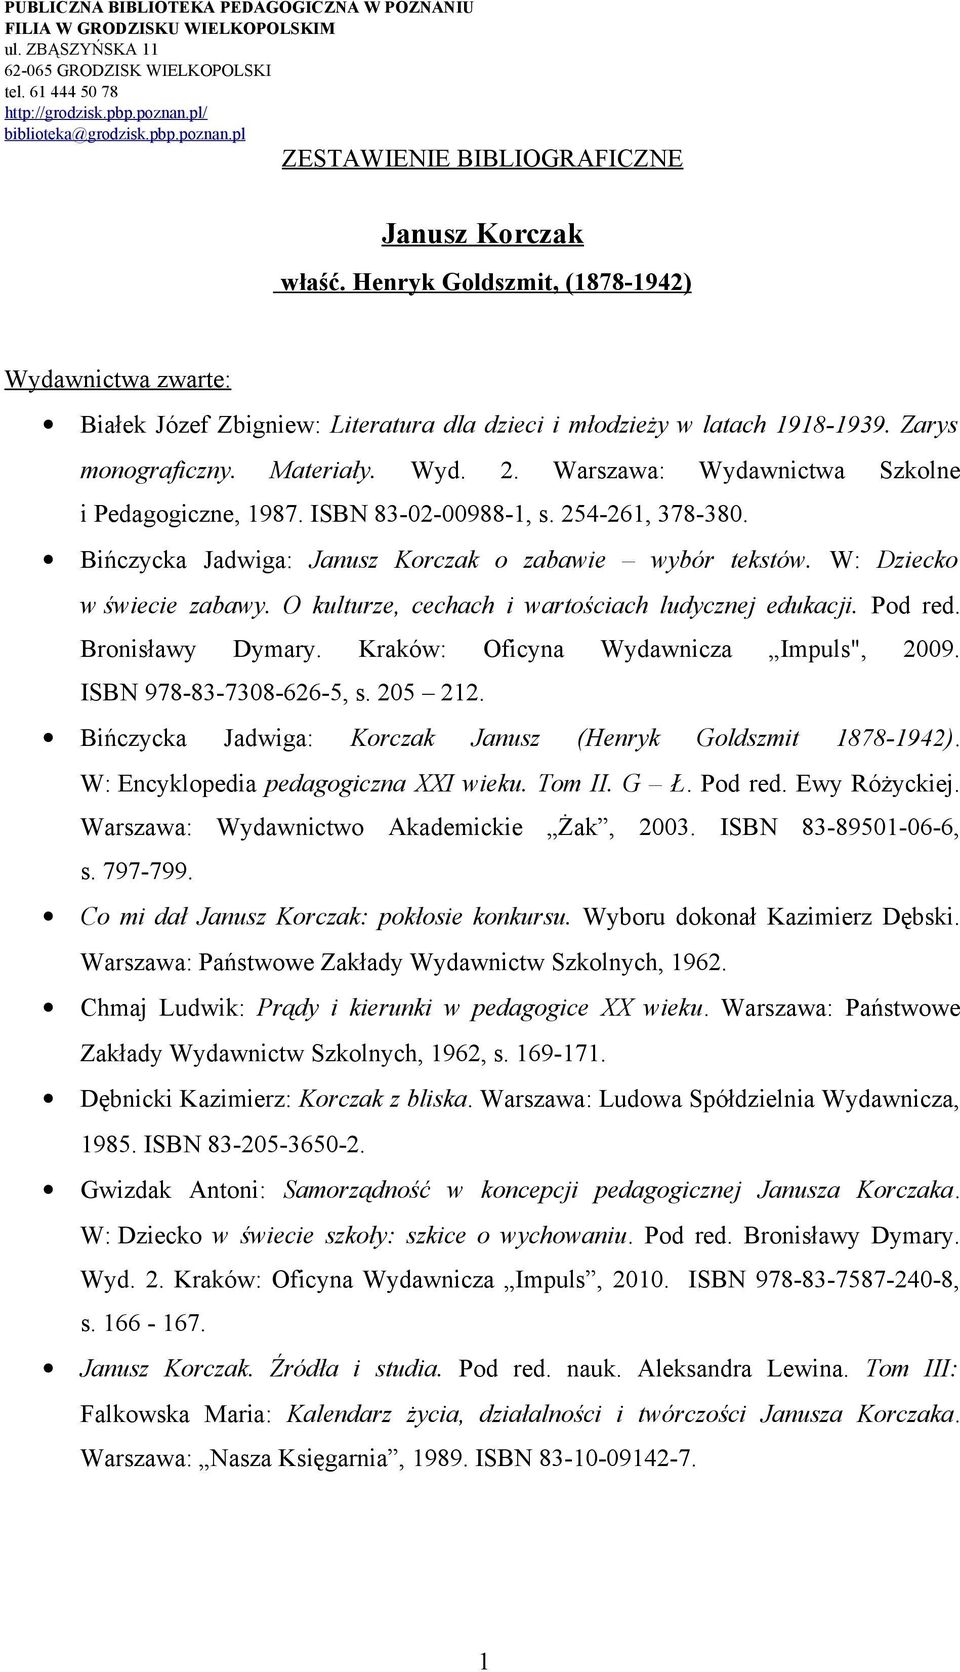 O kulturze, cechach i wartościach ludycznej edukacji. Pod red. Bronisławy Dymary. Kraków: Oficyna Wydawnicza Impuls", 2009. ISBN 978-83-7308-626-5, s. 205 212.